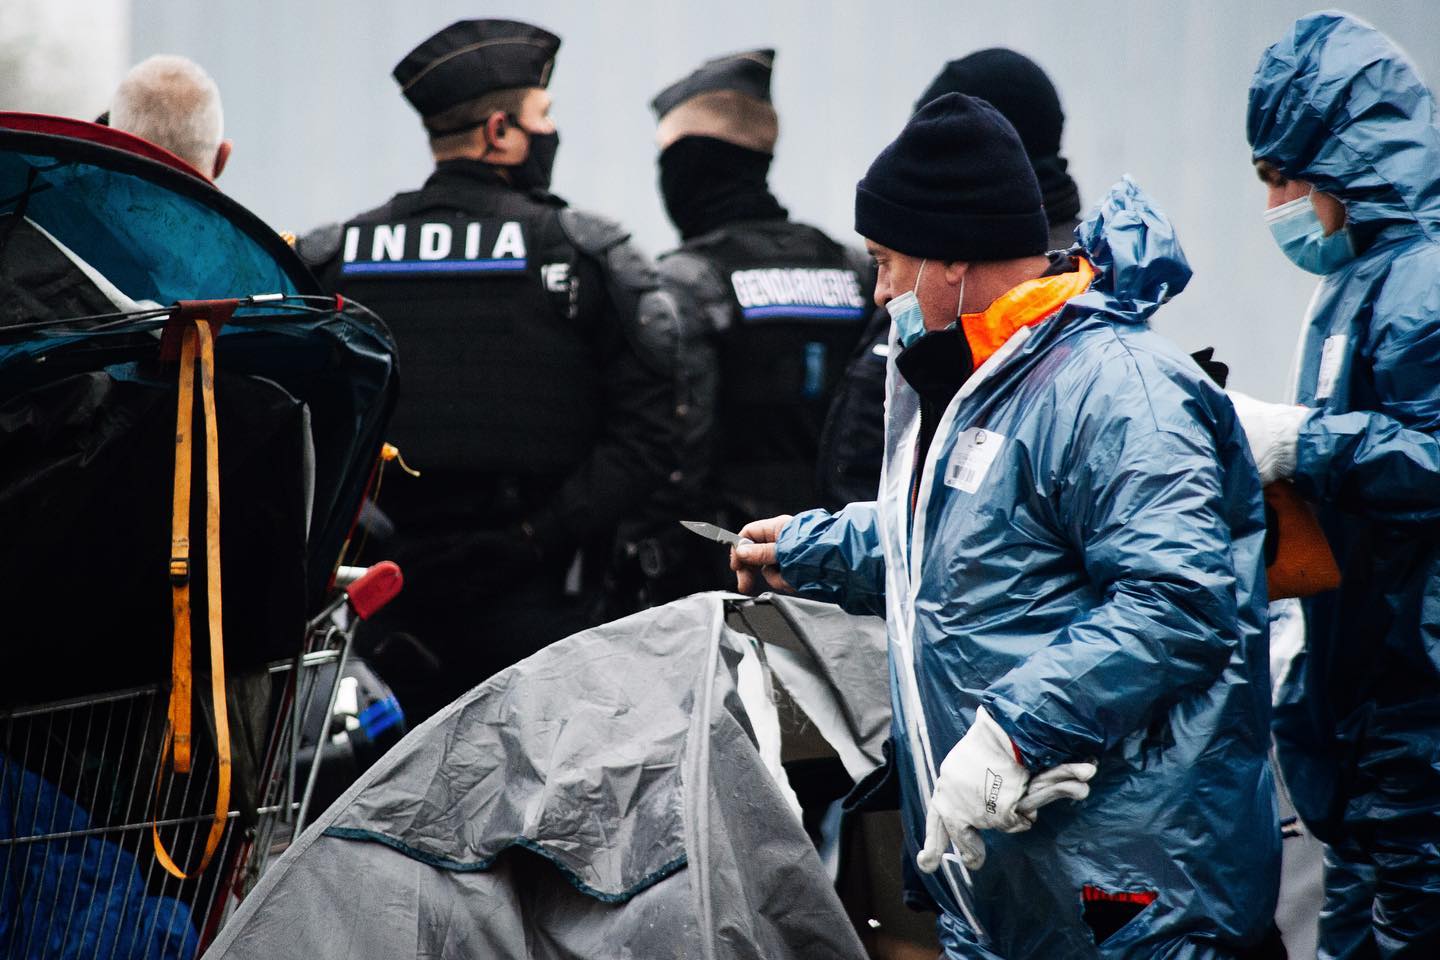 Régulièrement, des entreprises interviennent pour détruire et confisquer le matériel, escortées par les policiers (photo : Help 4 Dunkerque).